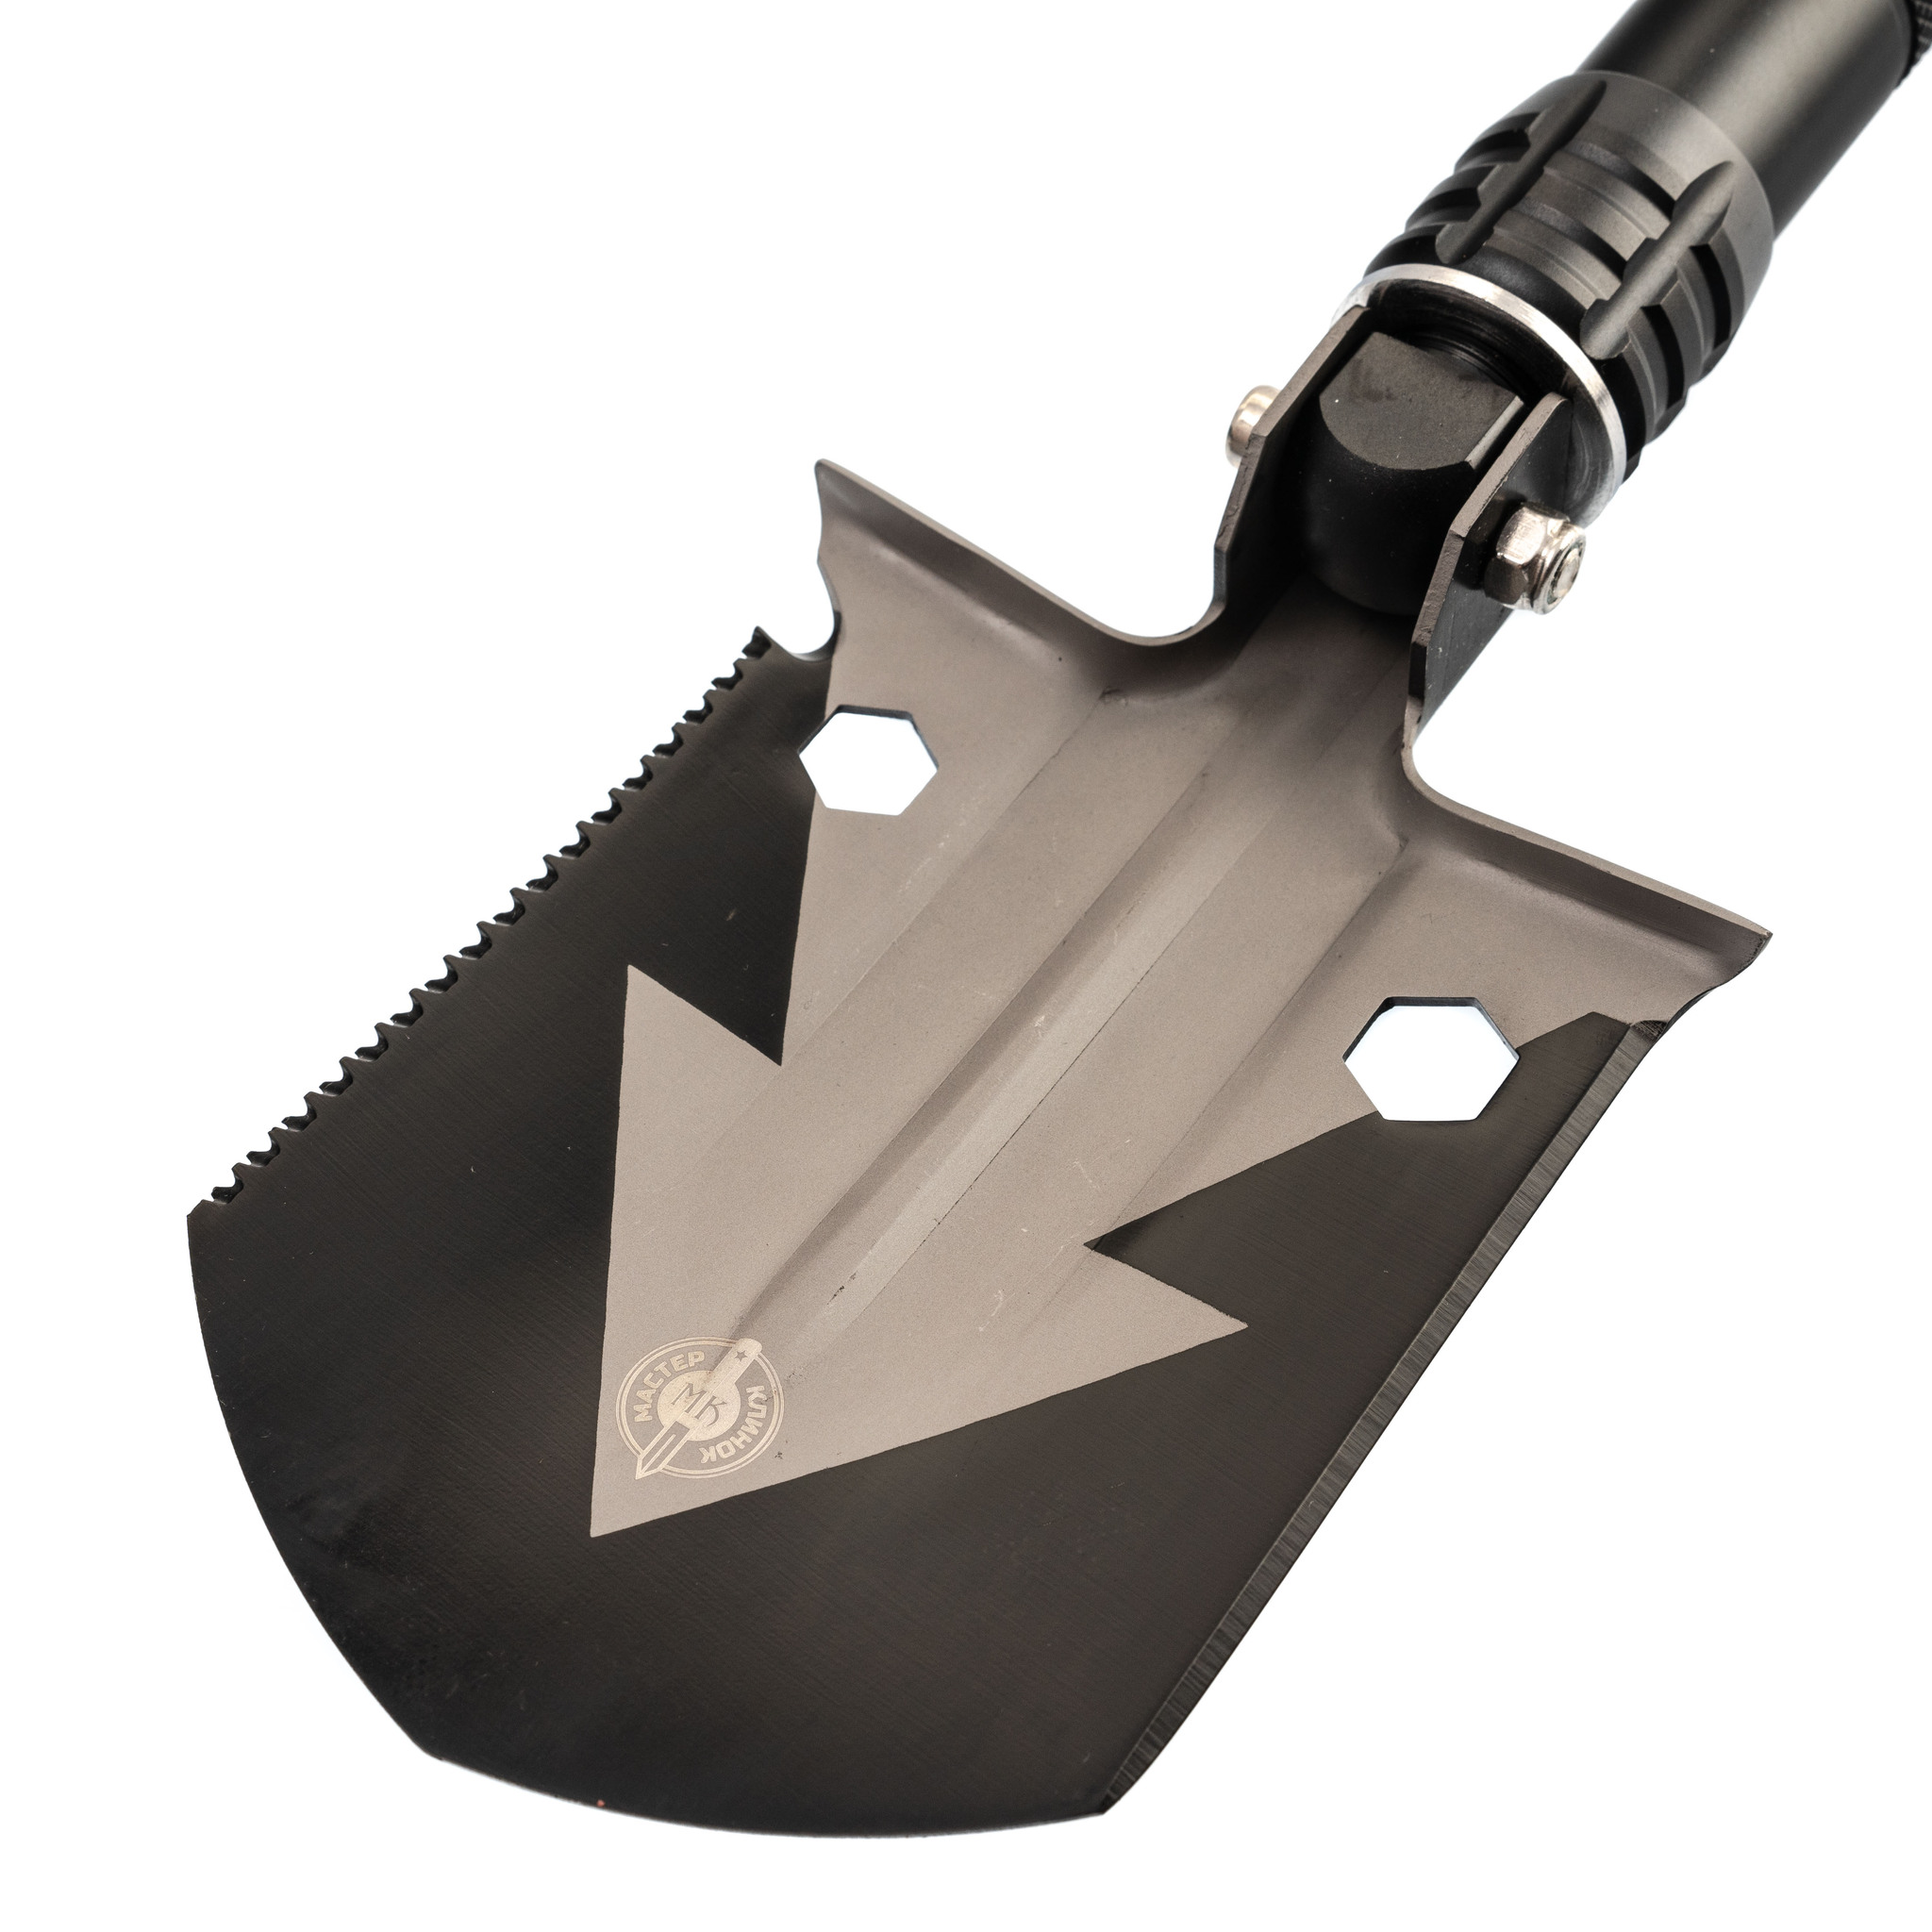 Многофункциональная складная лопата MX507 от Ножиков